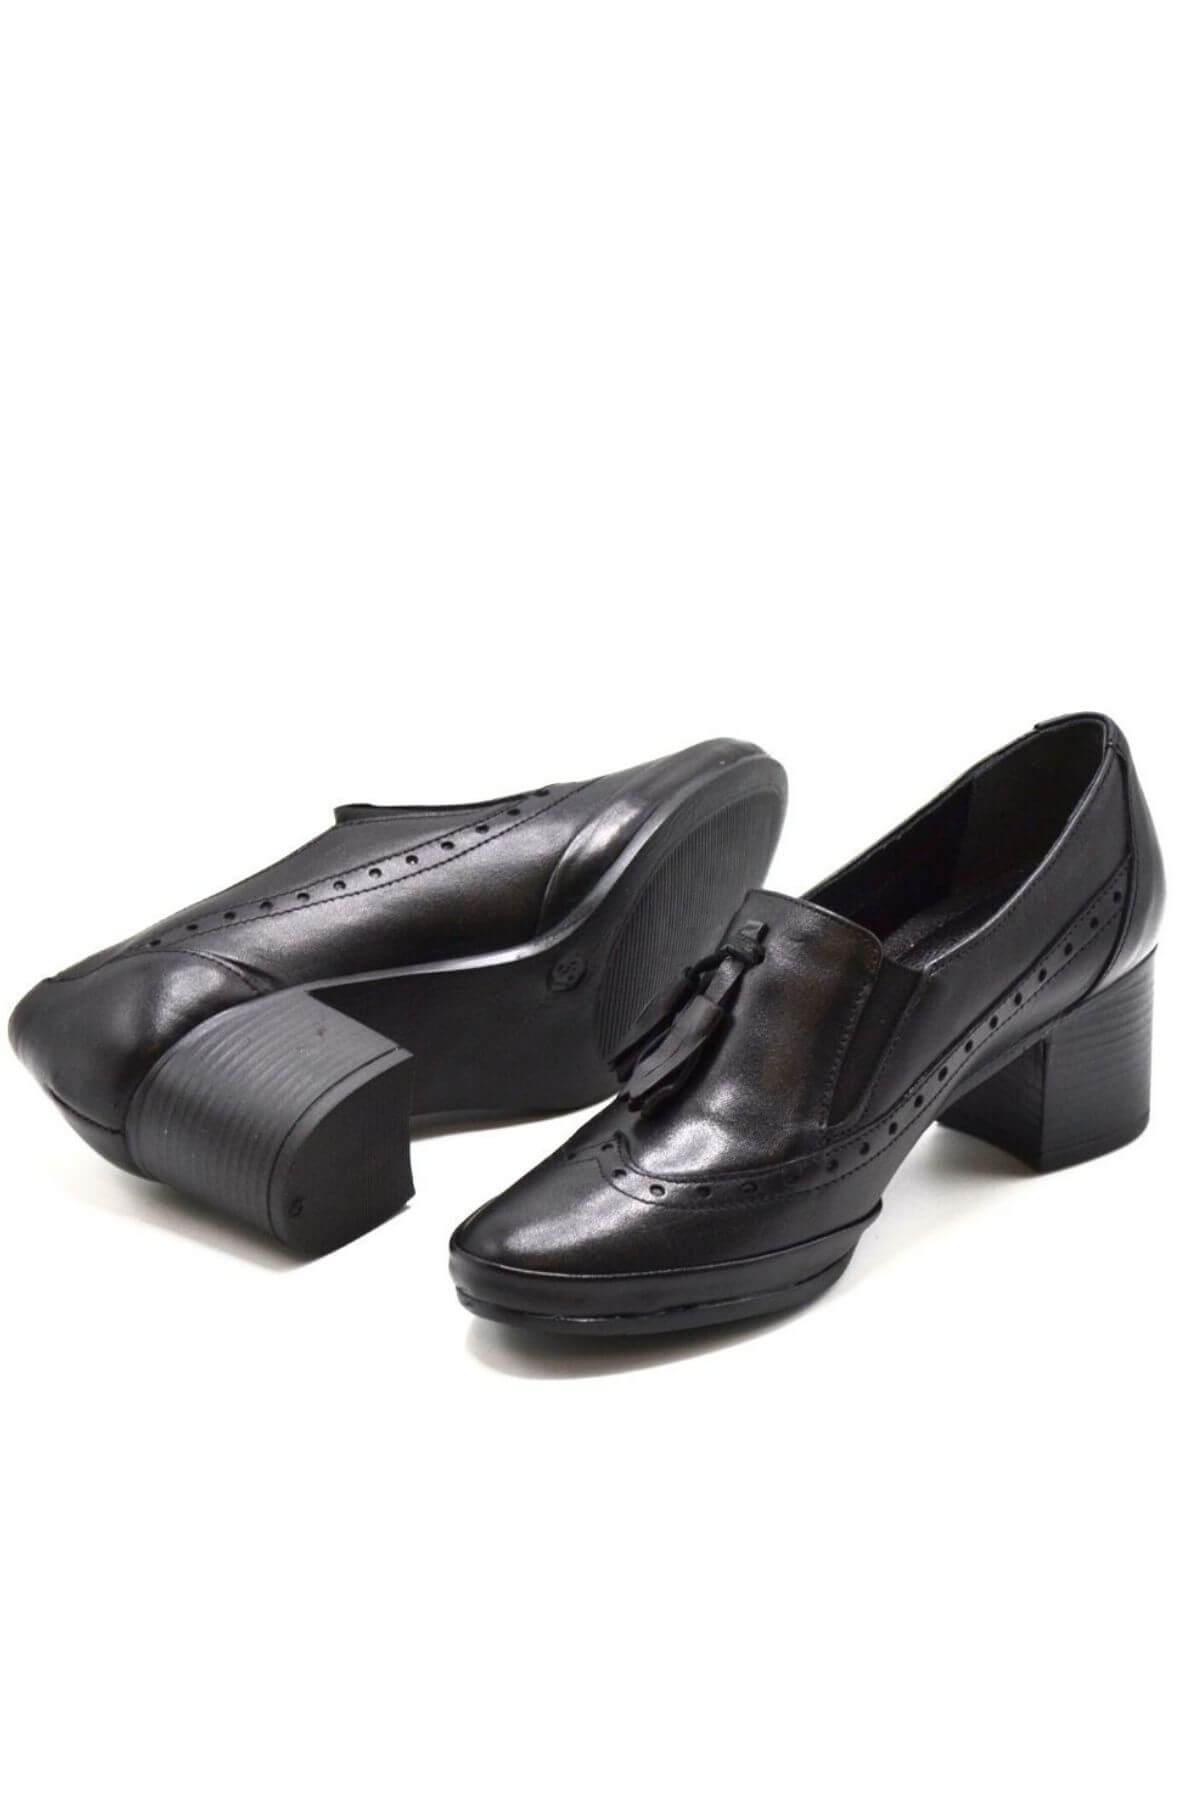 Kadın Topuklu Deri Ayakkabı Siyah 1911943K